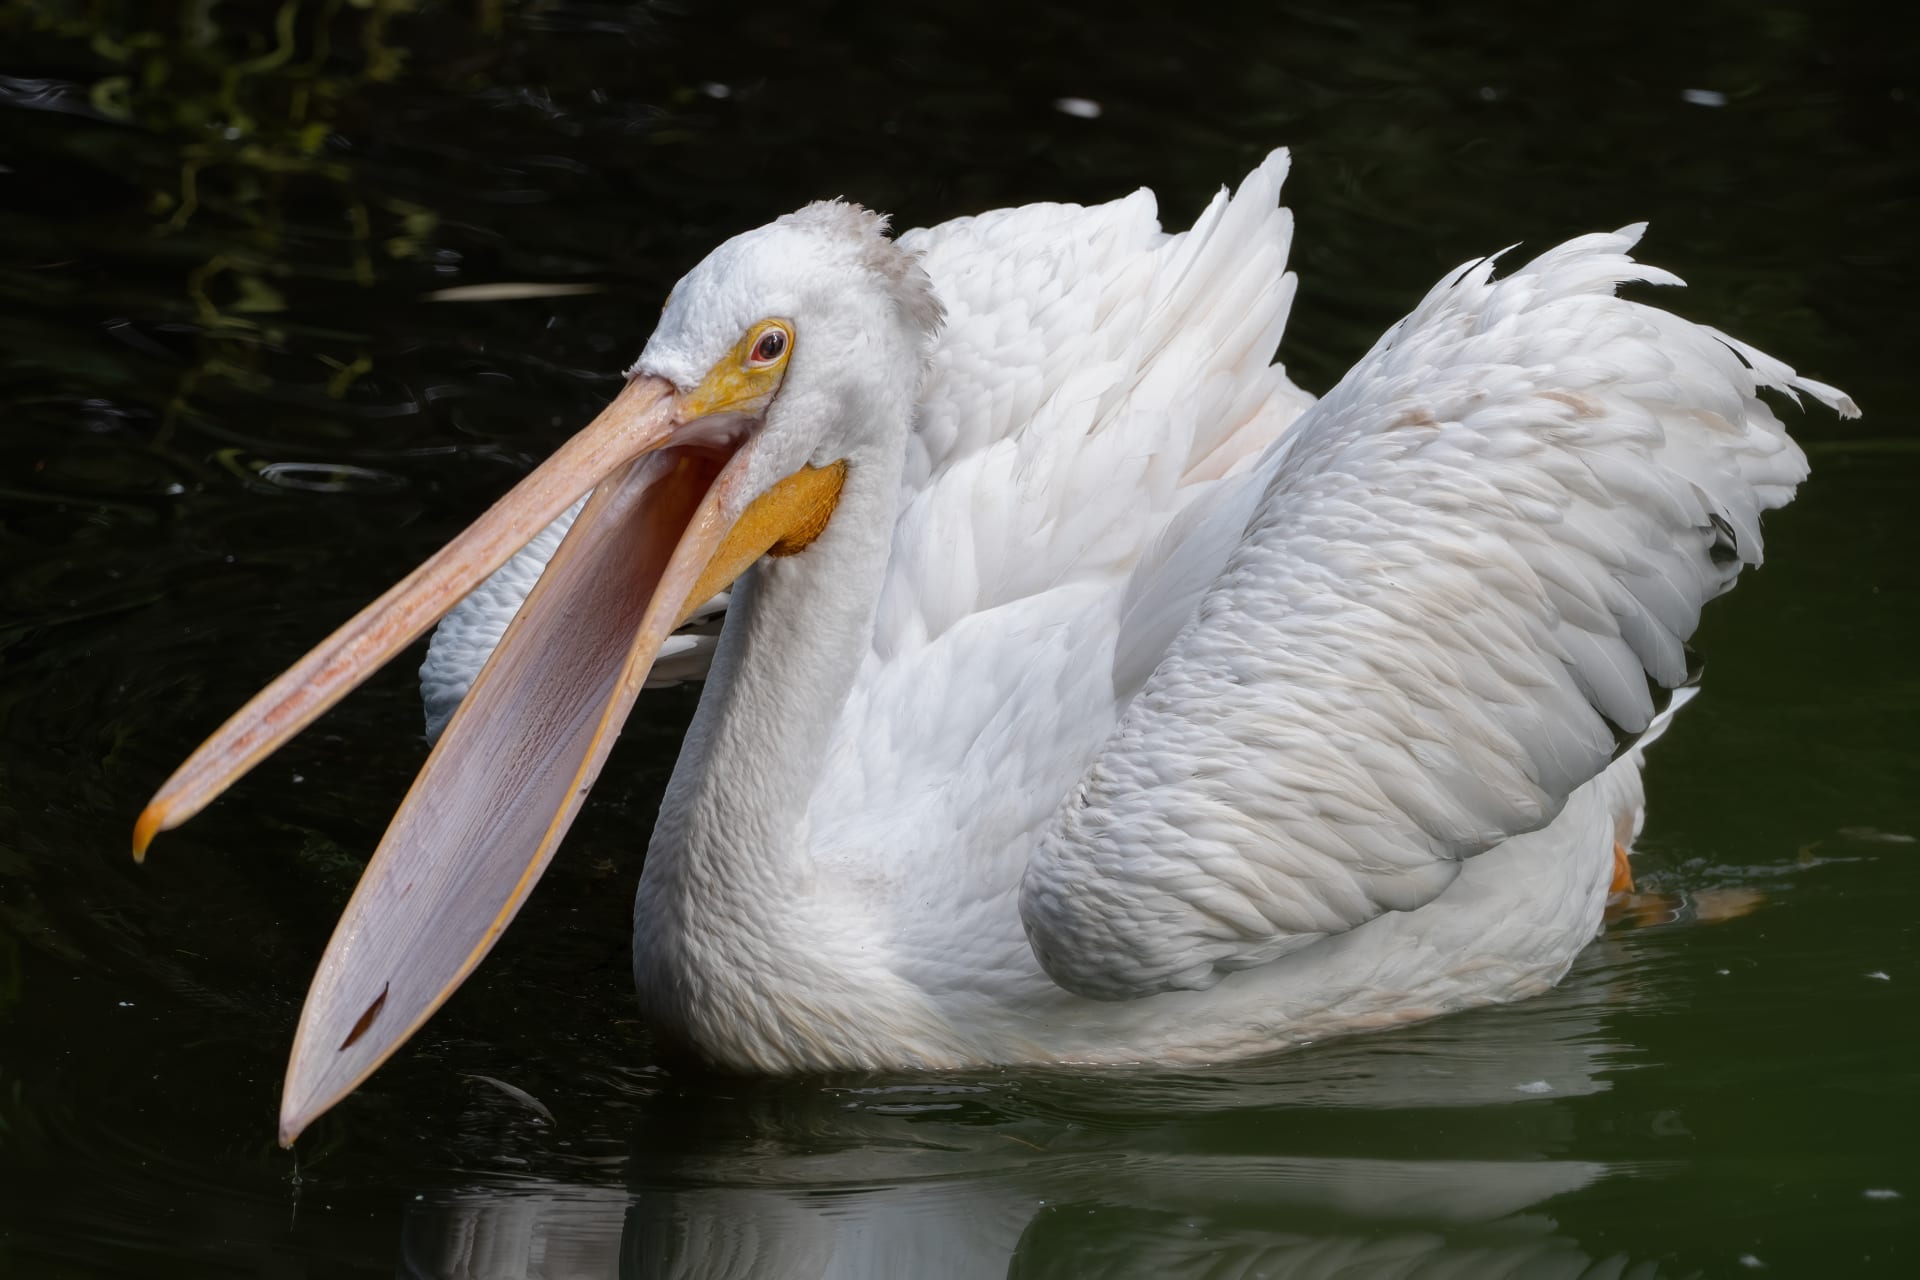 Zobák pelikána pojme až 14 litrů objemu